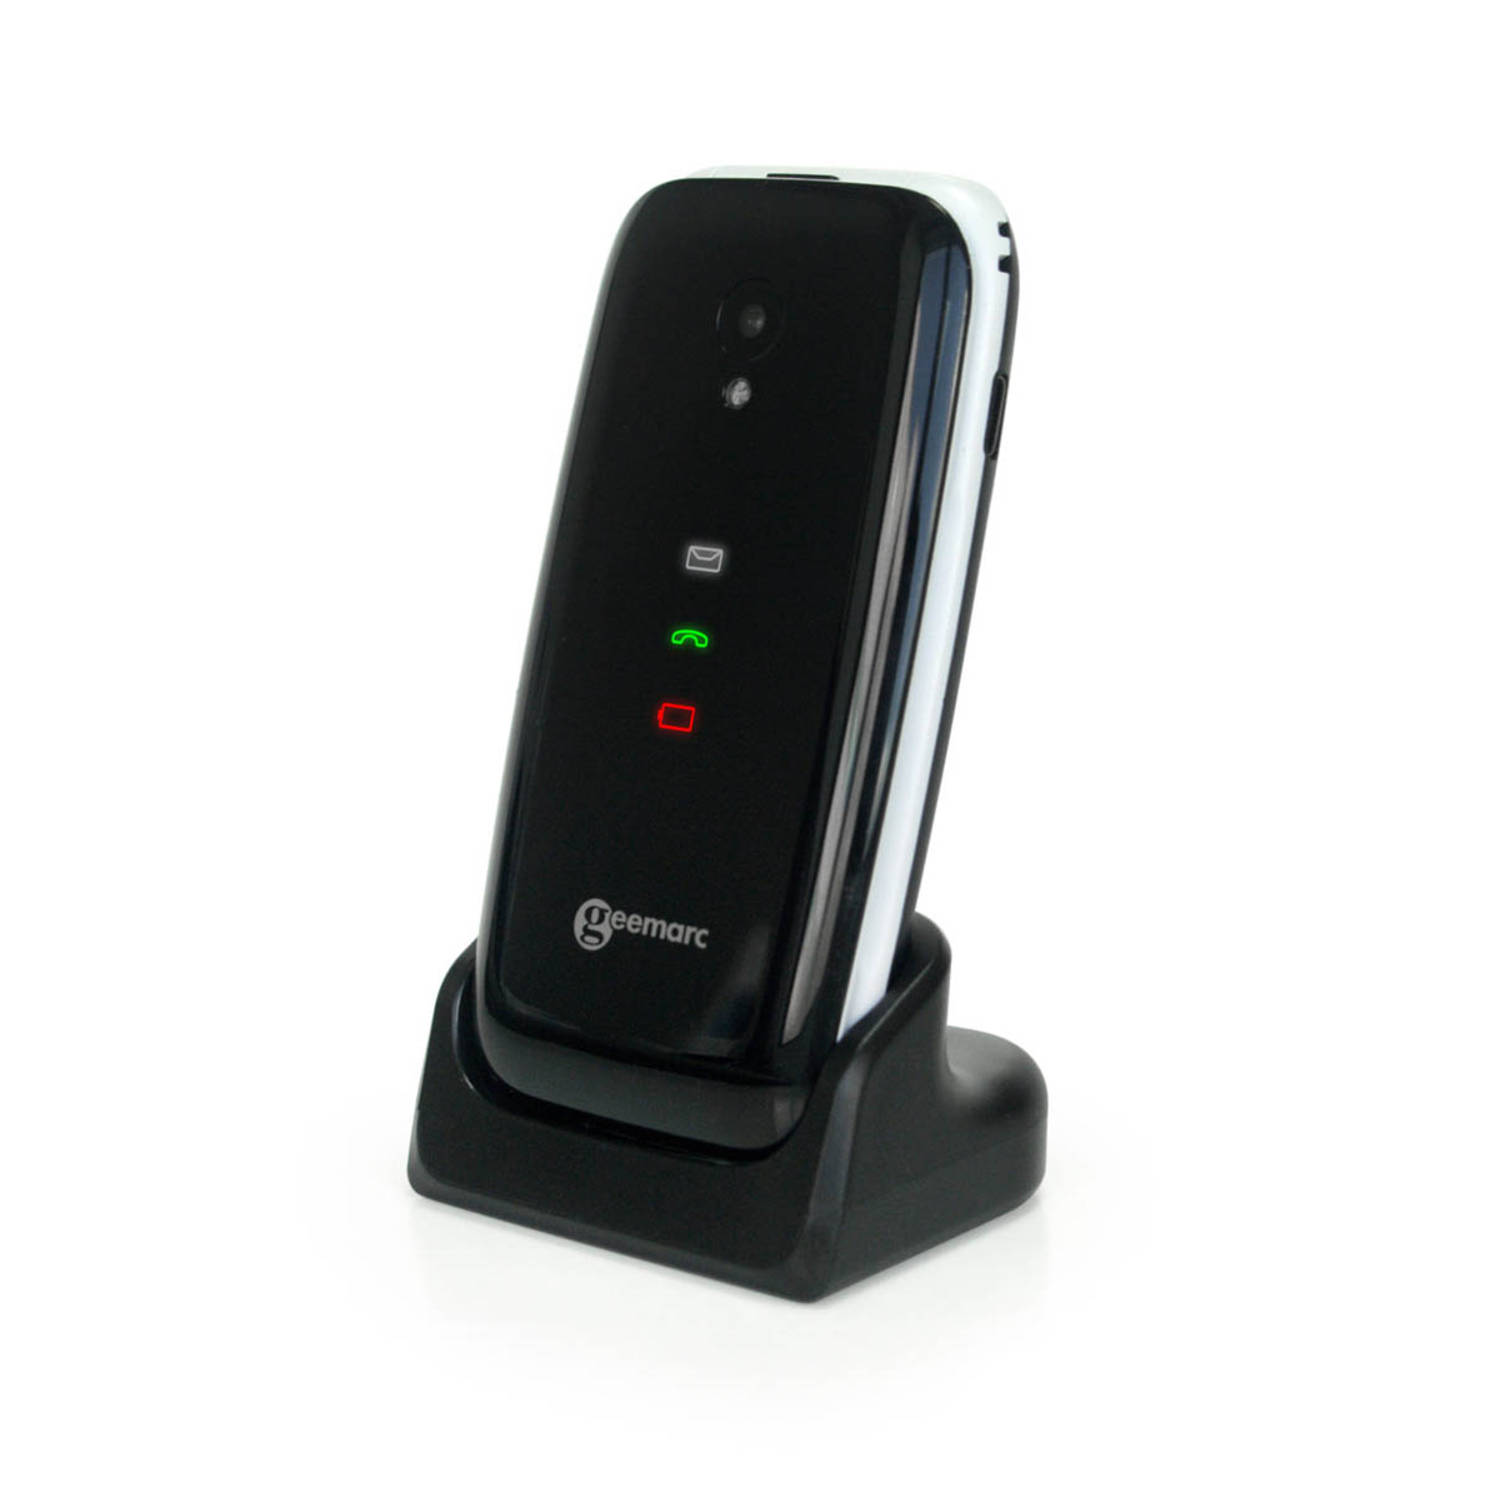 Geemarc CL8700 4G GSM mobiele telefoon zeer geschikt voor SLECHTHORENDEN en SLECHTZIENDEN